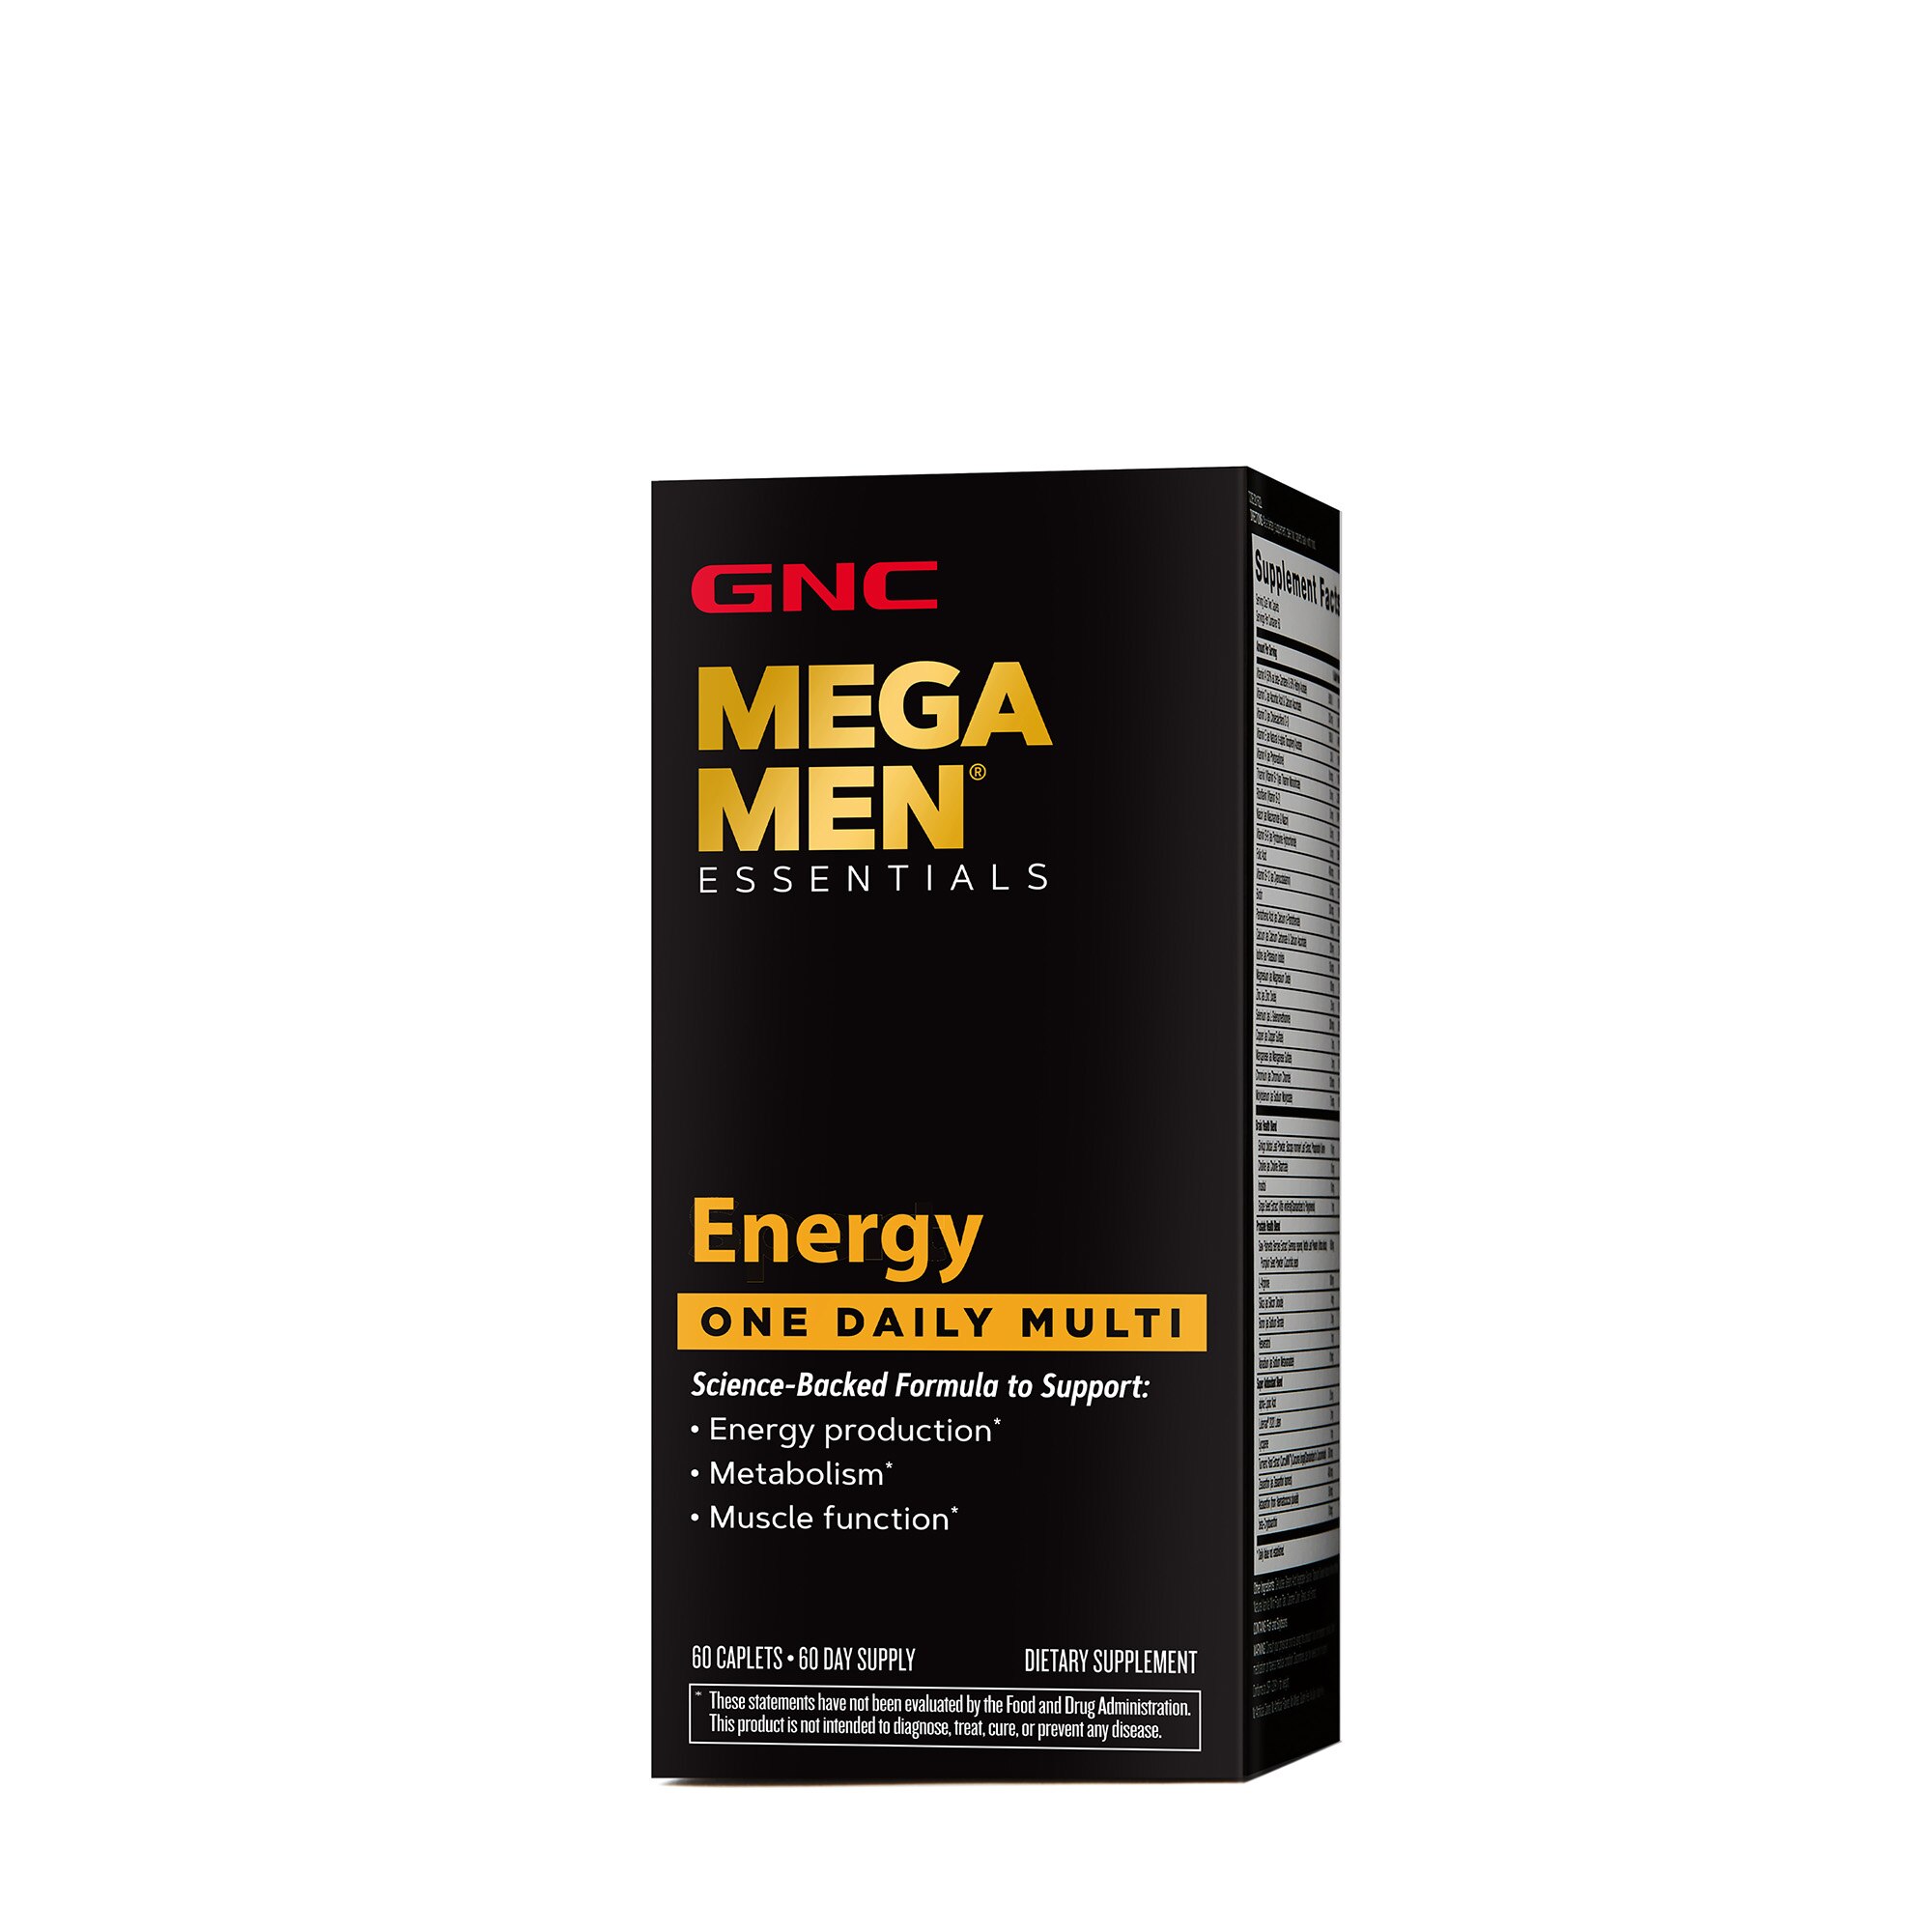 GNC Mega Men Energy Essentials One Daily Multi, 60 Caplets